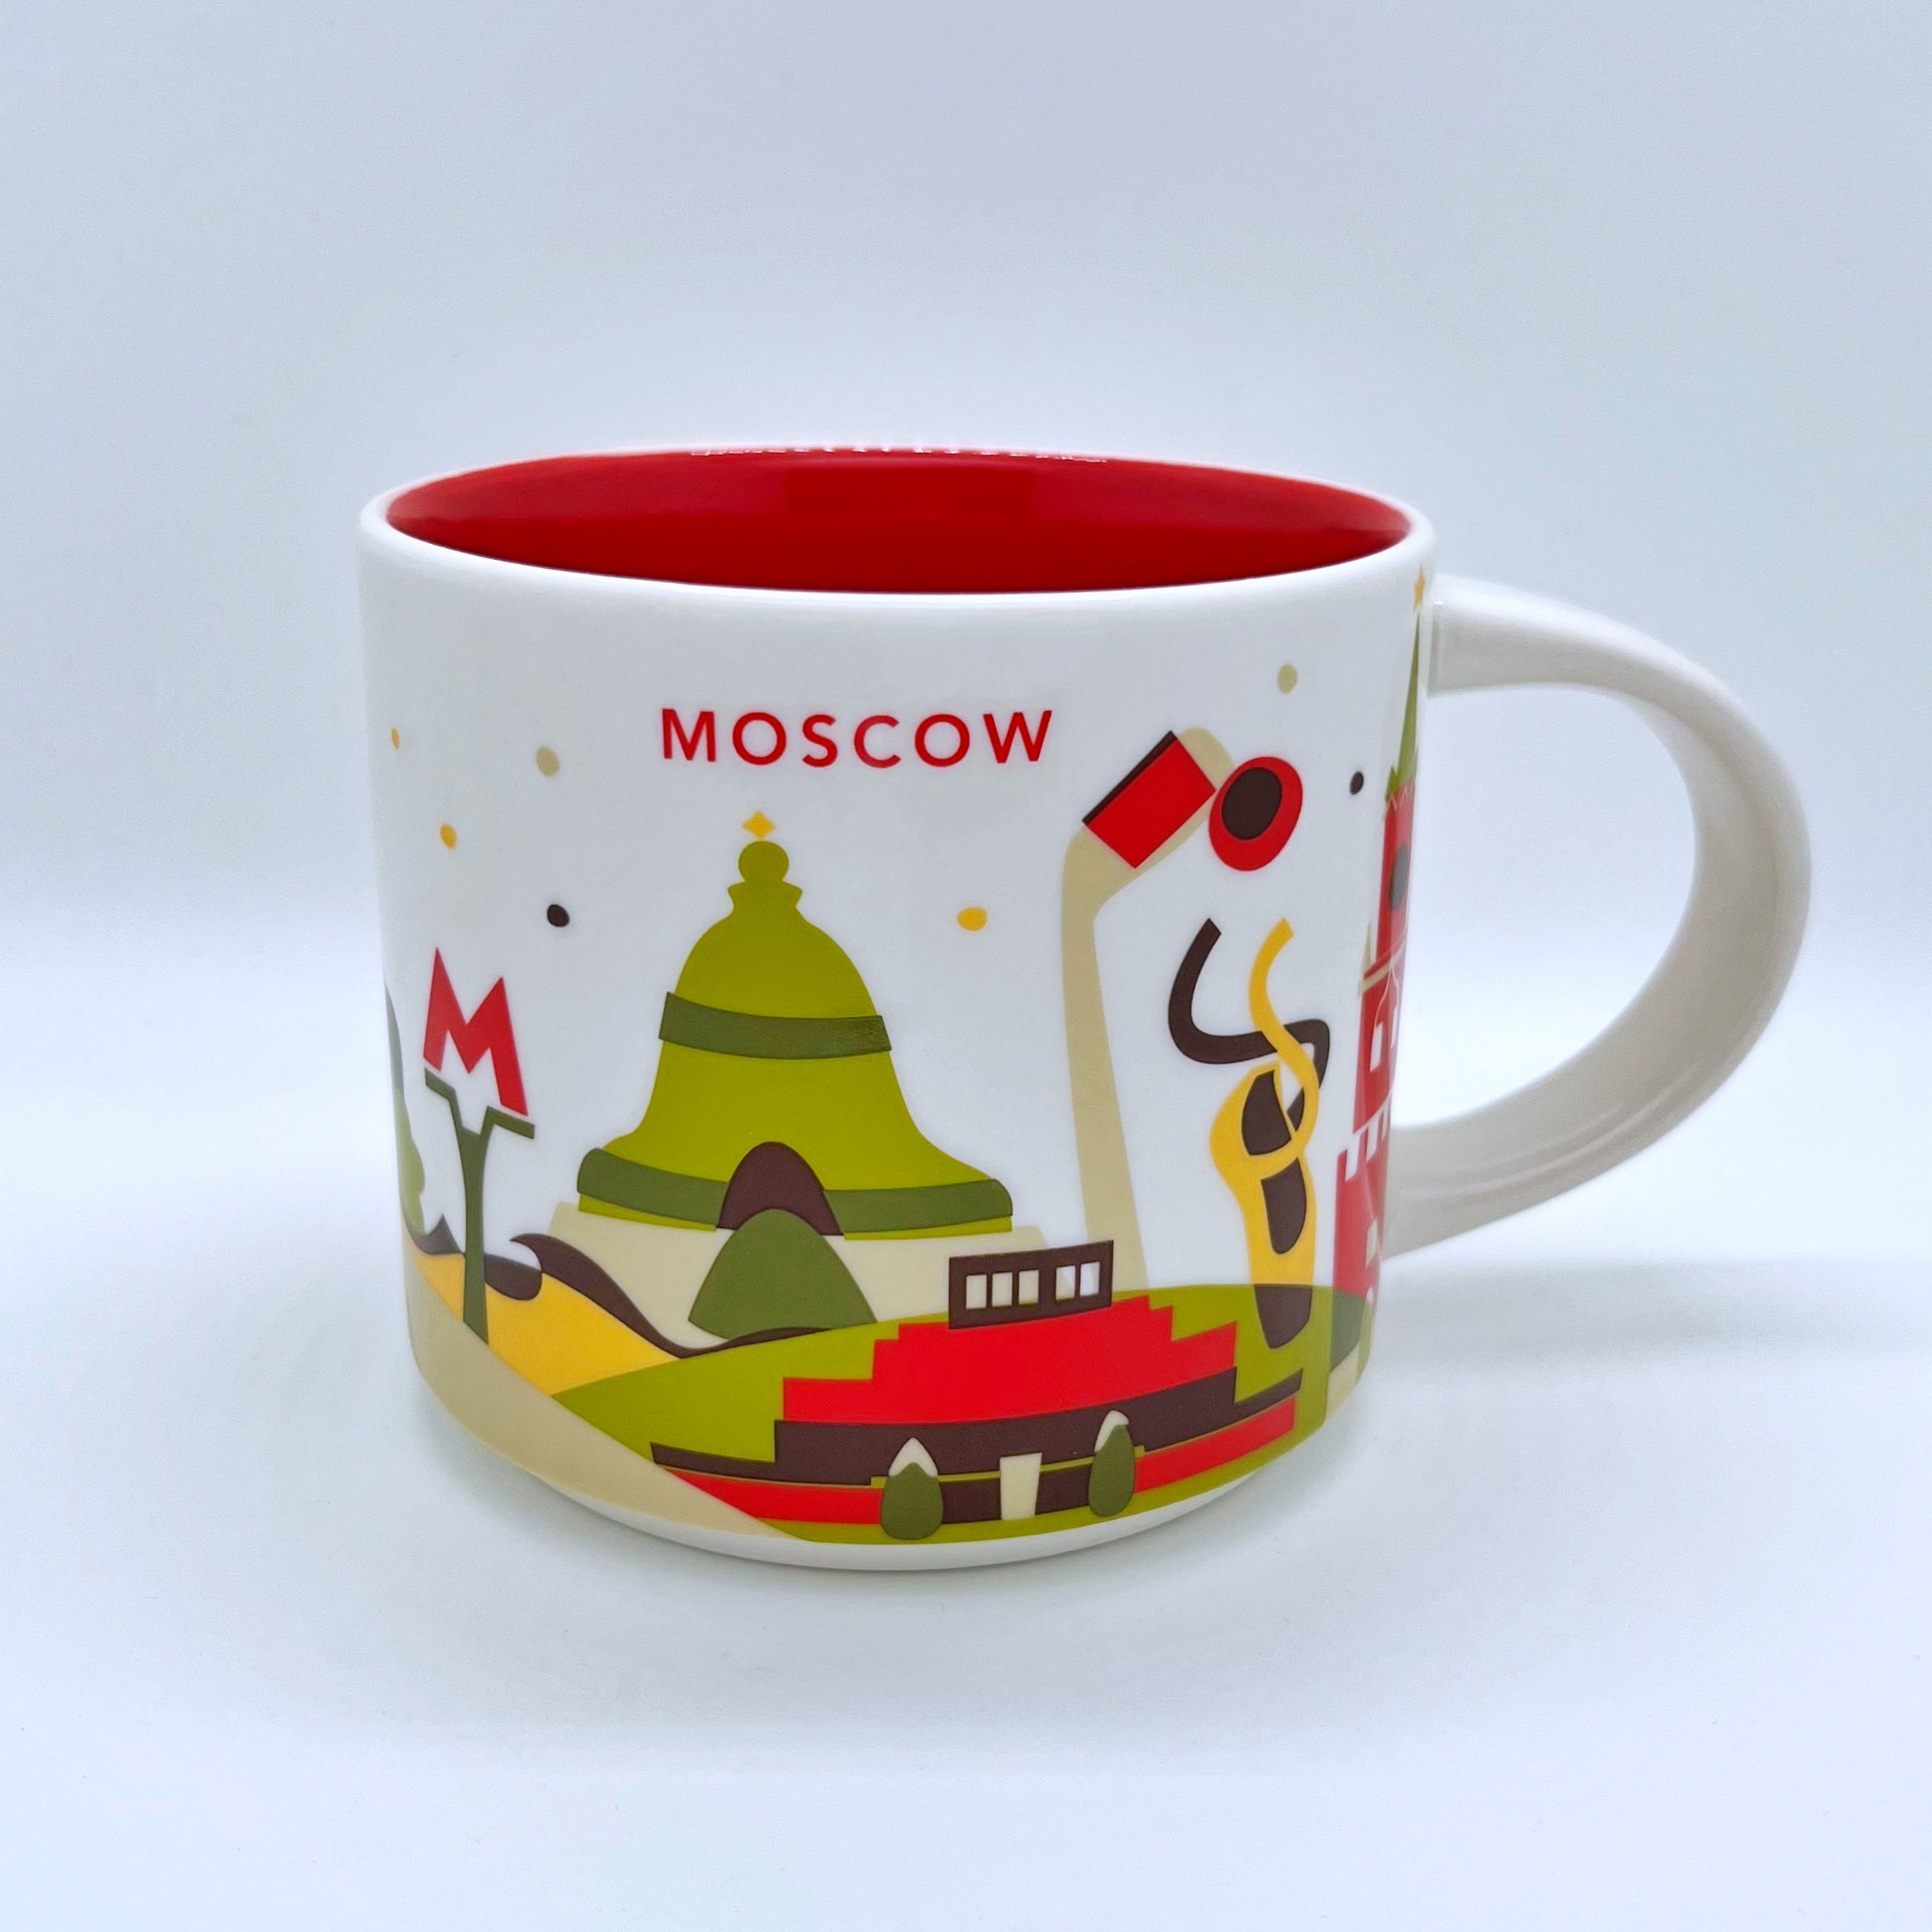 Kaffee Tee und Cappuccino Tasse von Starbucks mit gemalten Bildern aus der Stadt Moskau